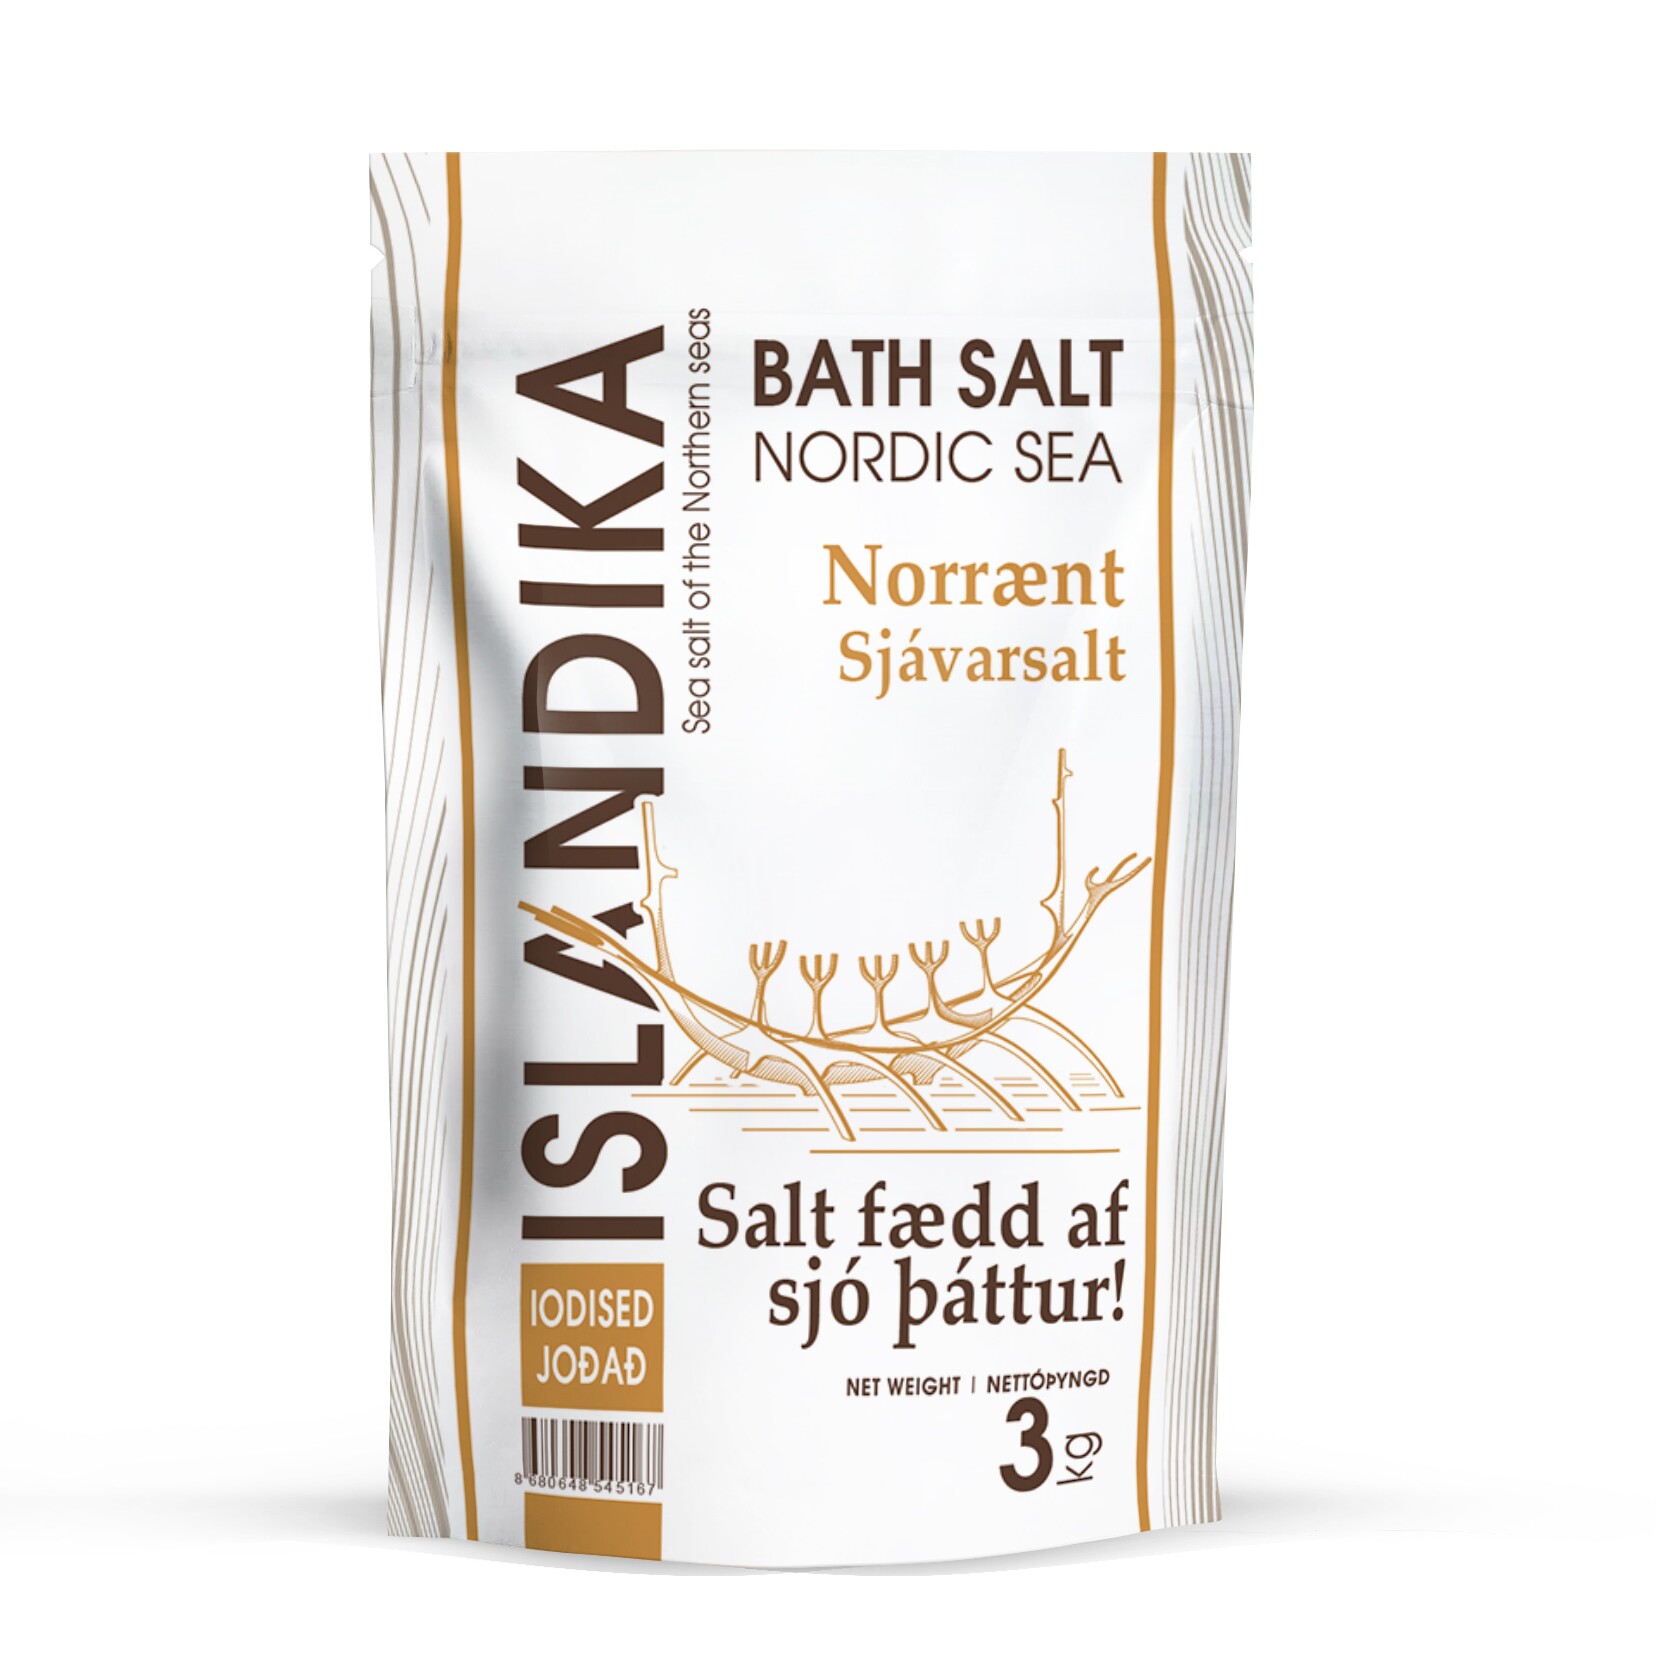 Соль специальная для ванн, природная морская соль йодированная, классическая гранула, ISLANDIKA (Исландика), пачка 3 кг.